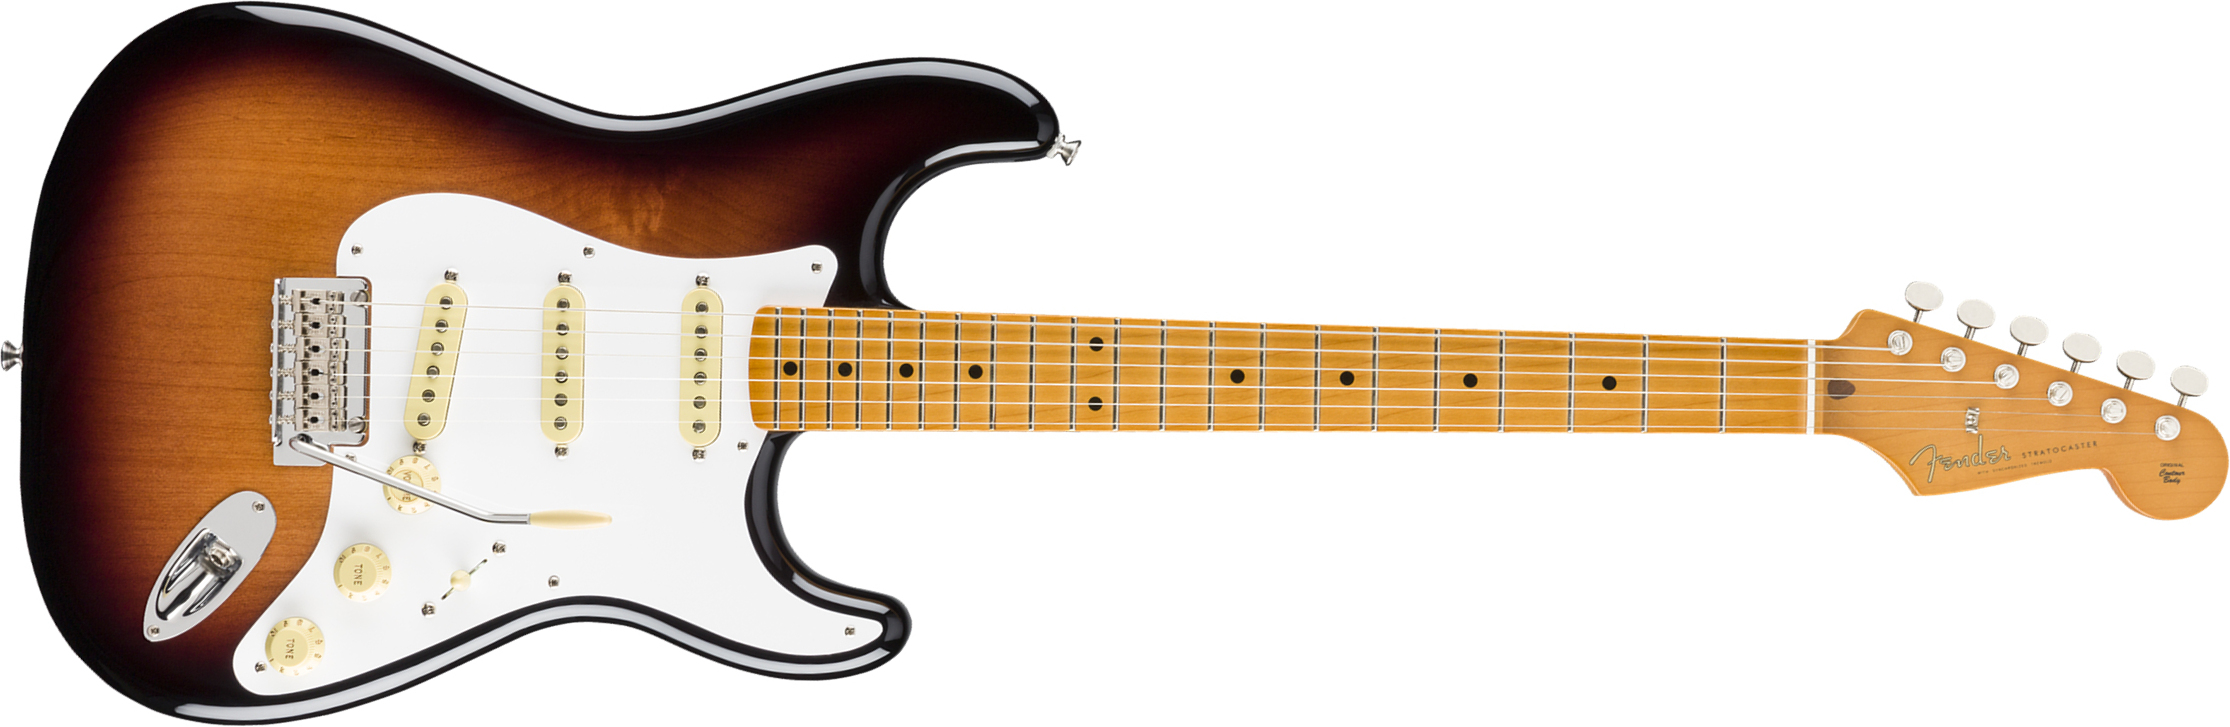 Fender Strat 50s Vintera Modified Mex Mn - 2-color Sunburst - E-Gitarre in Str-Form - Main picture